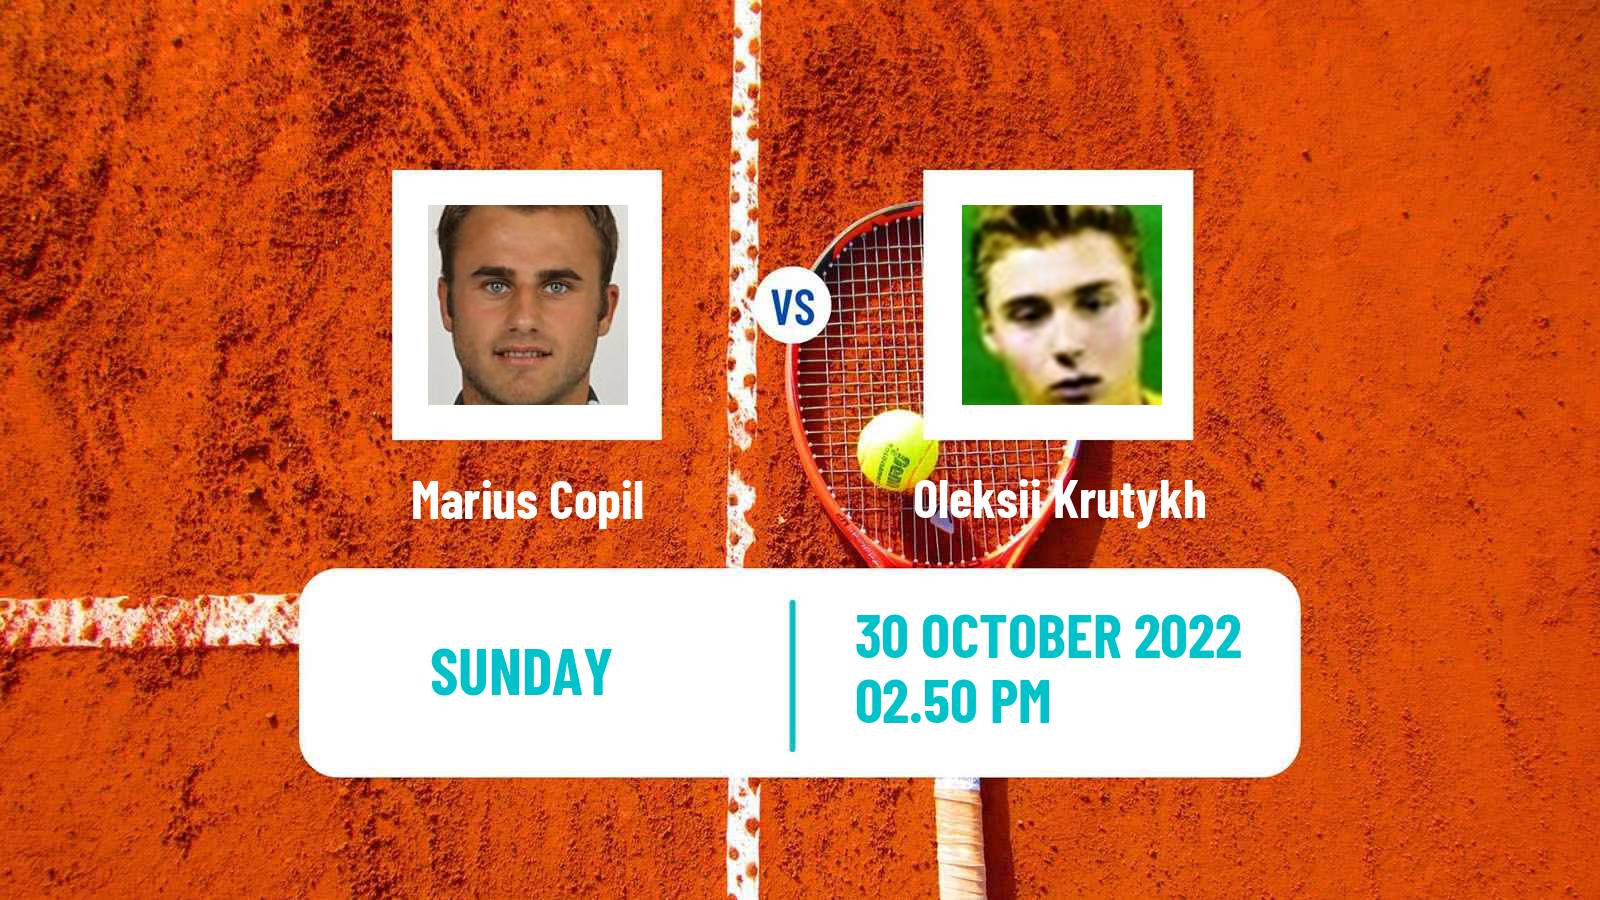 Tennis ATP Challenger Marius Copil - Oleksii Krutykh